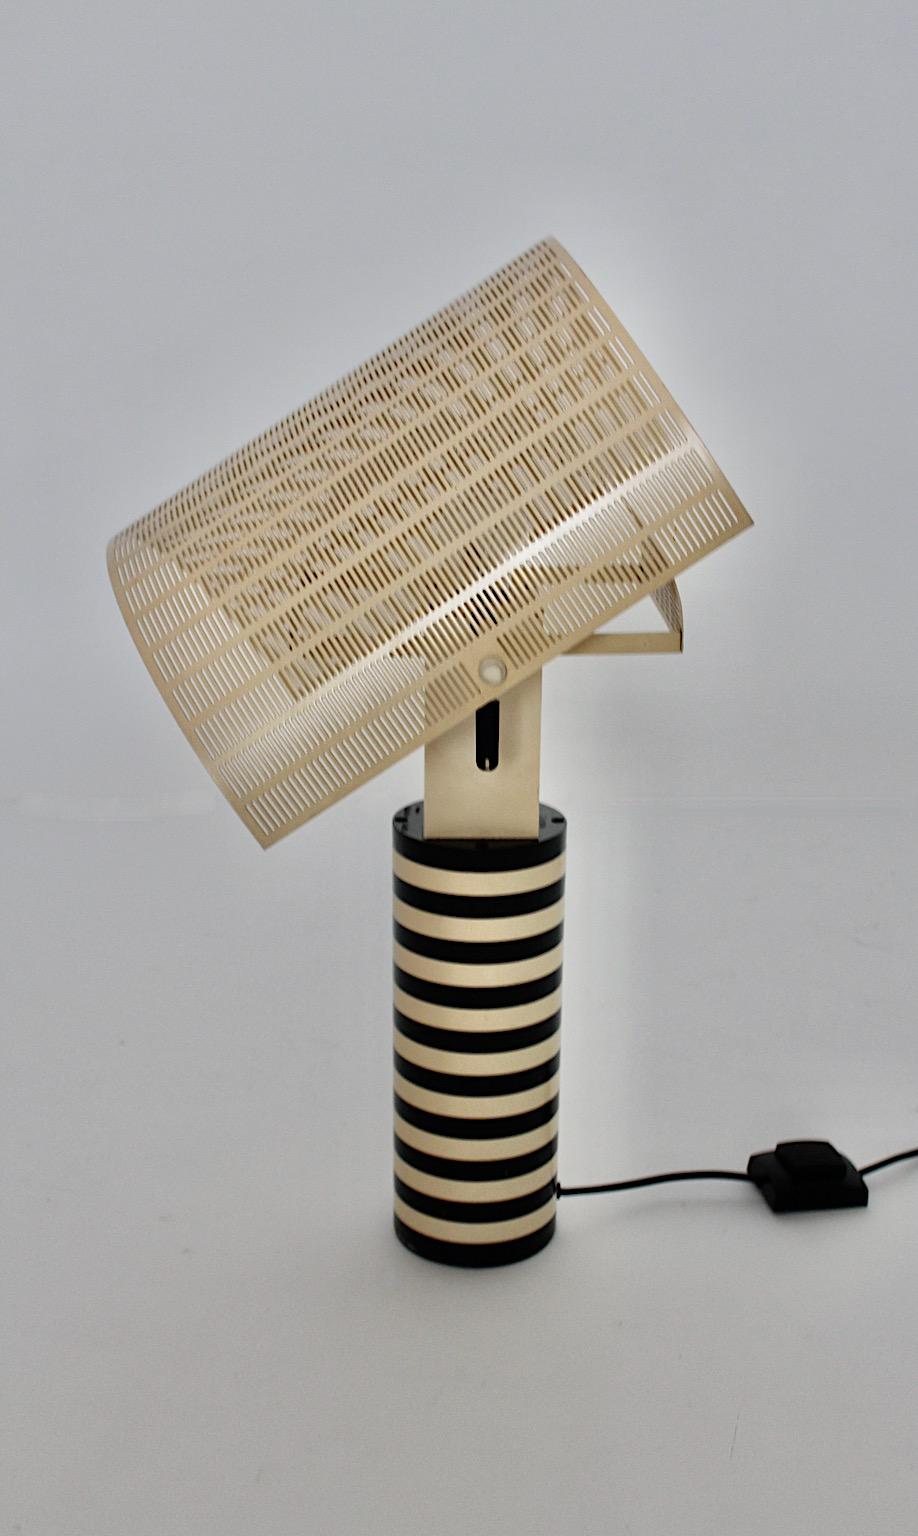 Postmodern Vintage Black White Table Lamp Shogun Mario Botta Artemide 1986 Italy For Sale 10